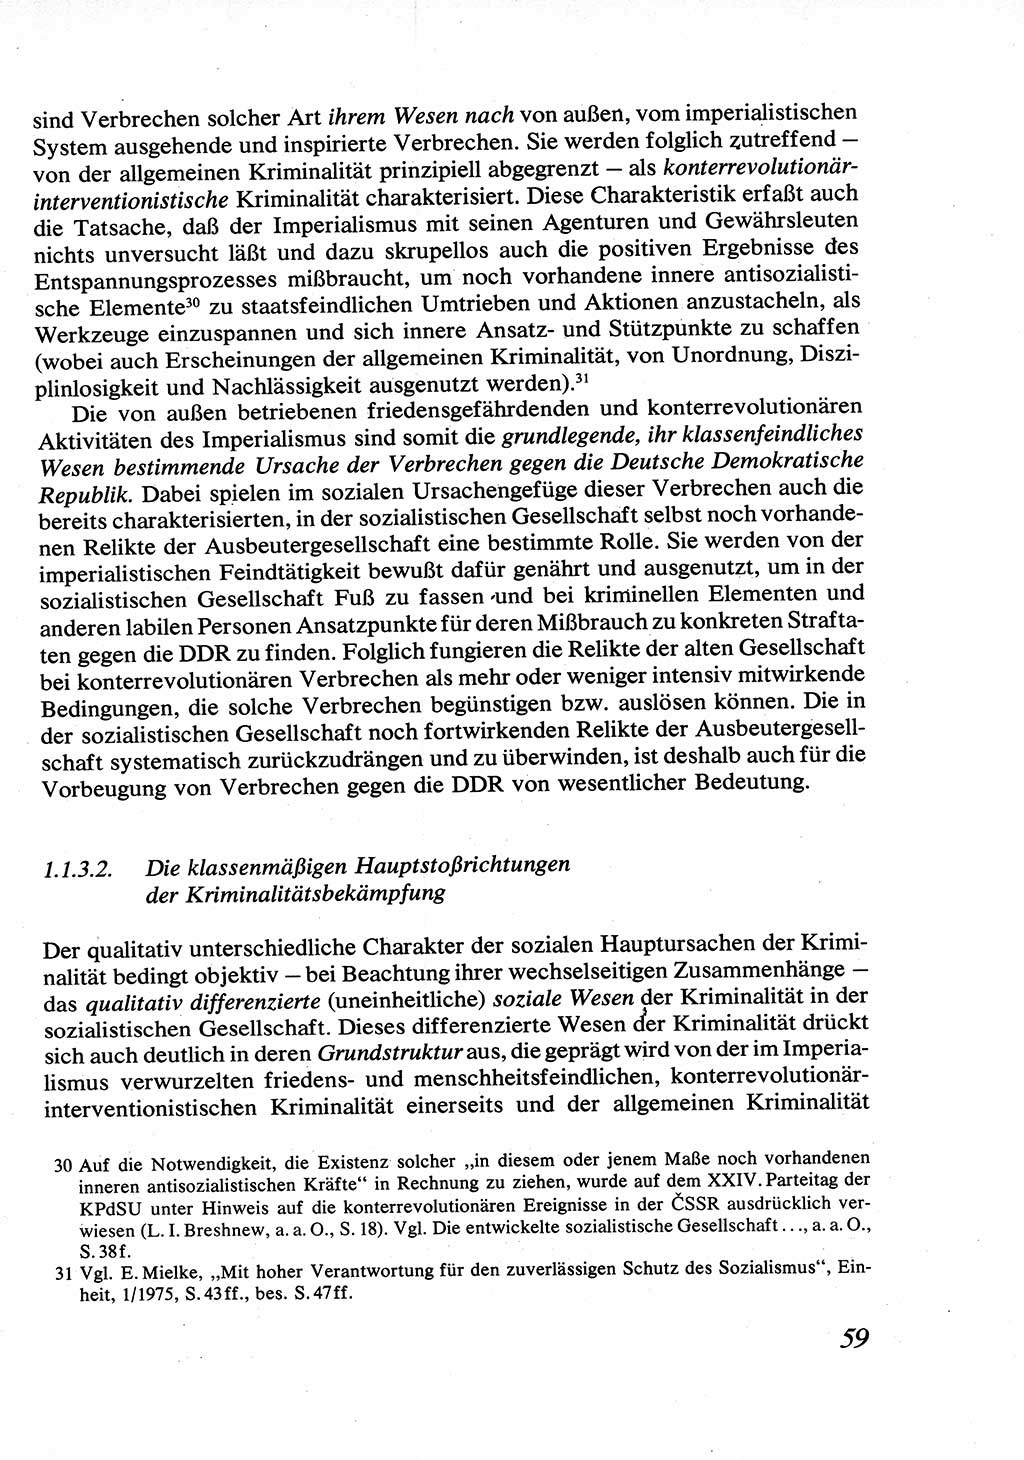 Strafrecht [Deutsche Demokratische Republik (DDR)], Allgemeiner Teil, Lehrbuch 1976, Seite 59 (Strafr. DDR AT Lb. 1976, S. 59)